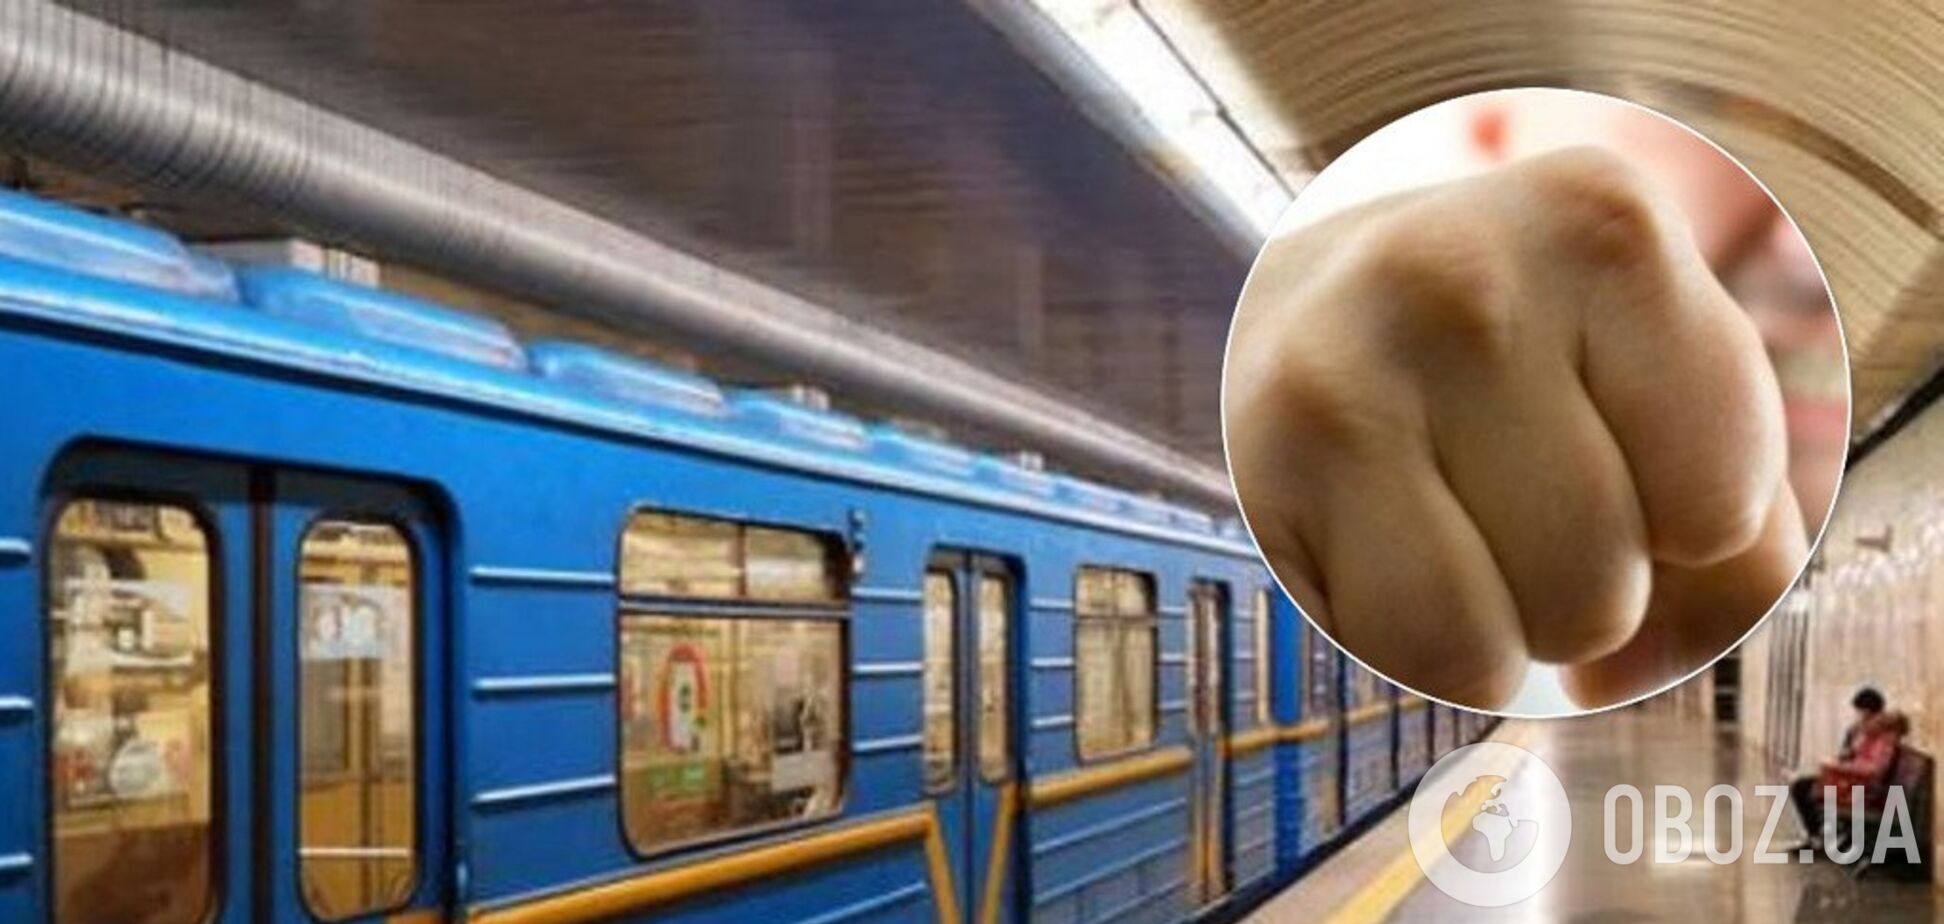 У Києві пасажири влаштували самосуд над крадієм у метро. Відео 18+